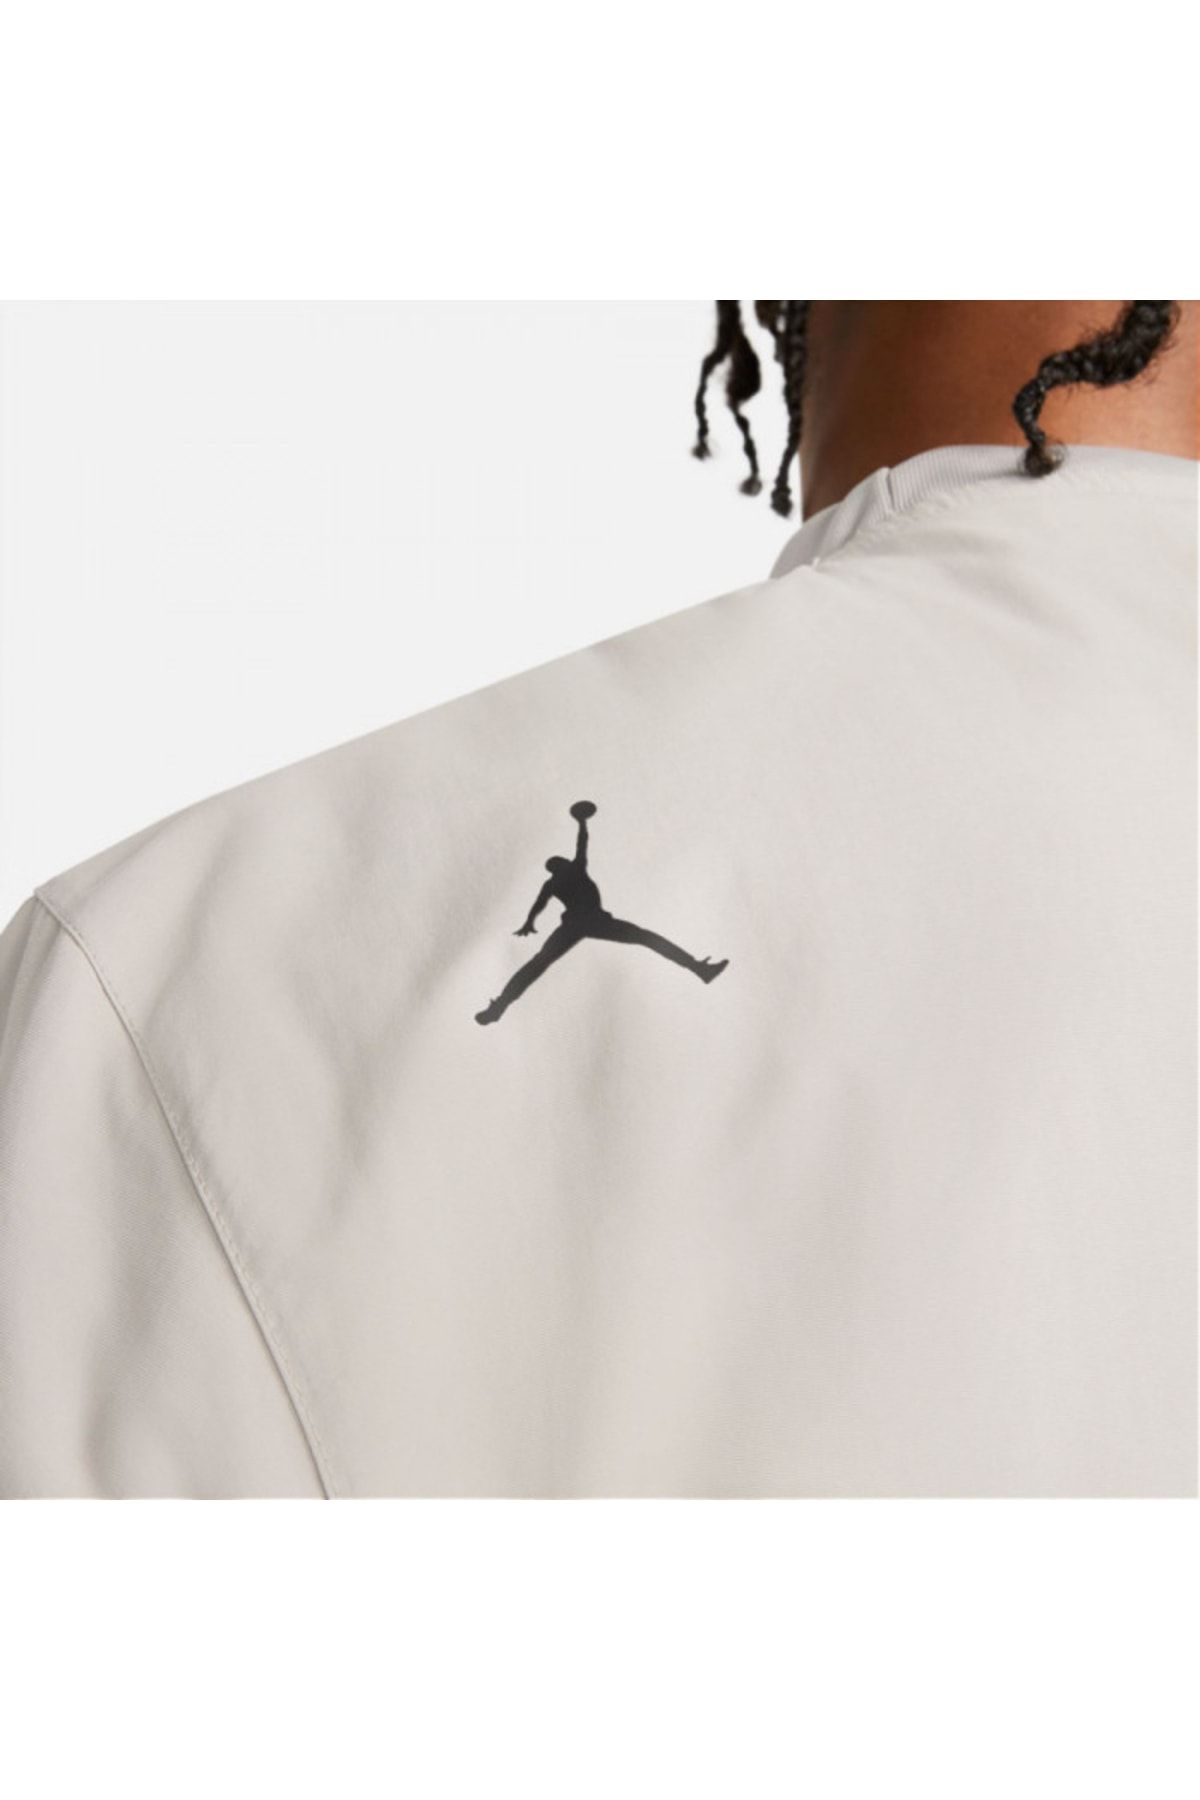 Nike ژاکت بدون قفل Primaloft مهندسی شده Air Jordan 23